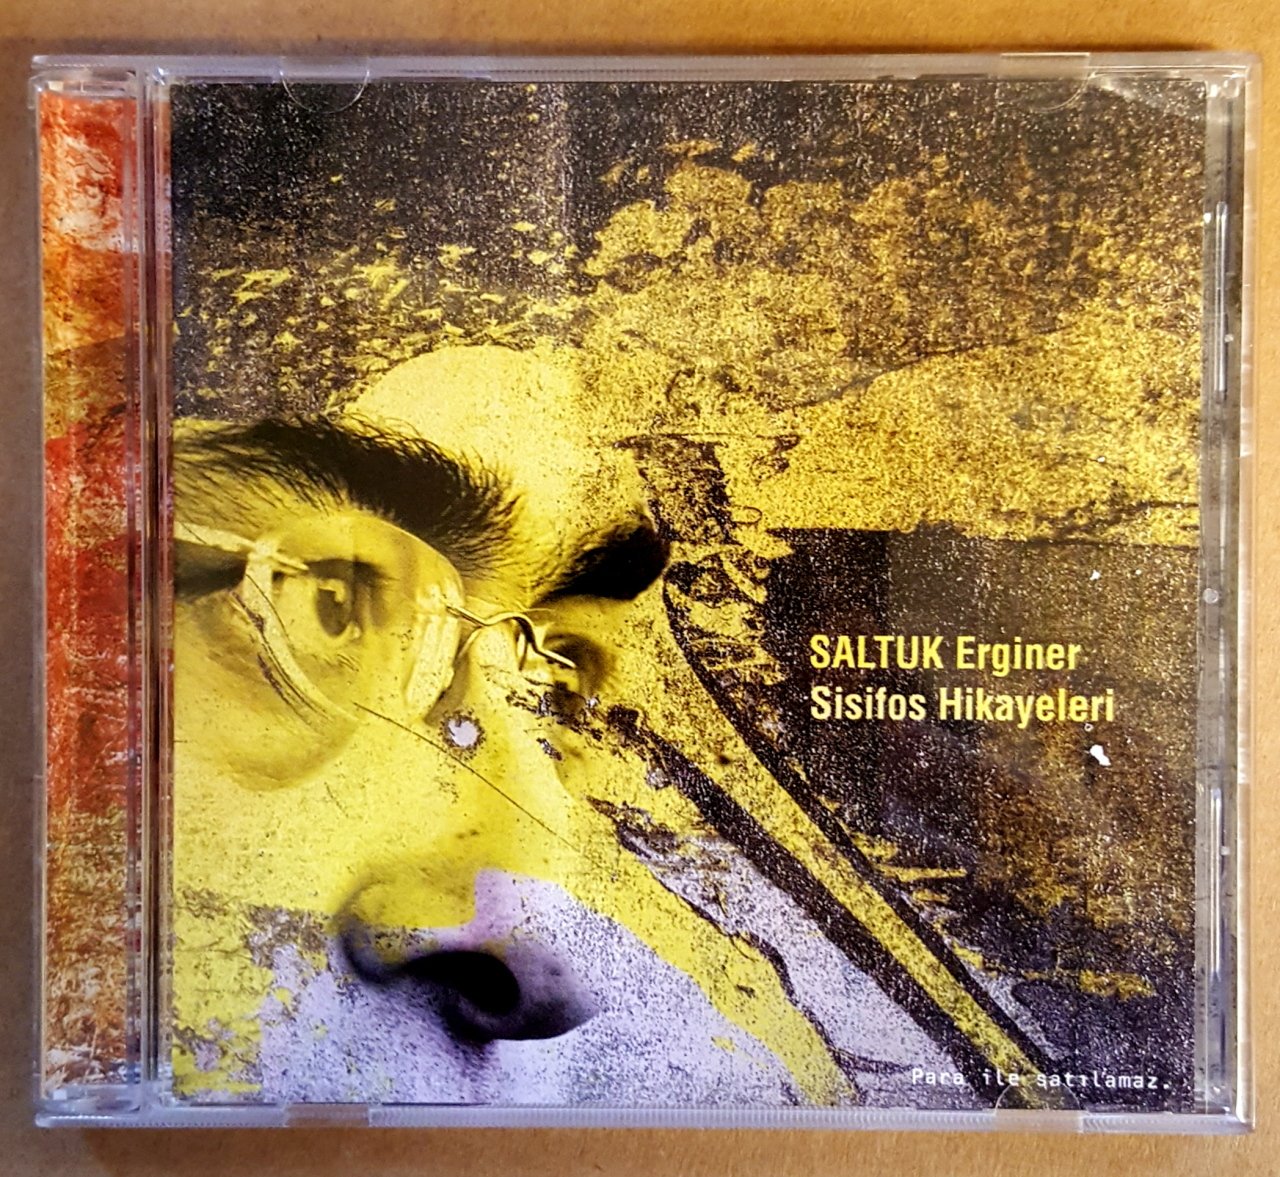 SALTUK ERGİNER - SİSİFOS HİKAYELERİ (2009) - CD-R 2.EL